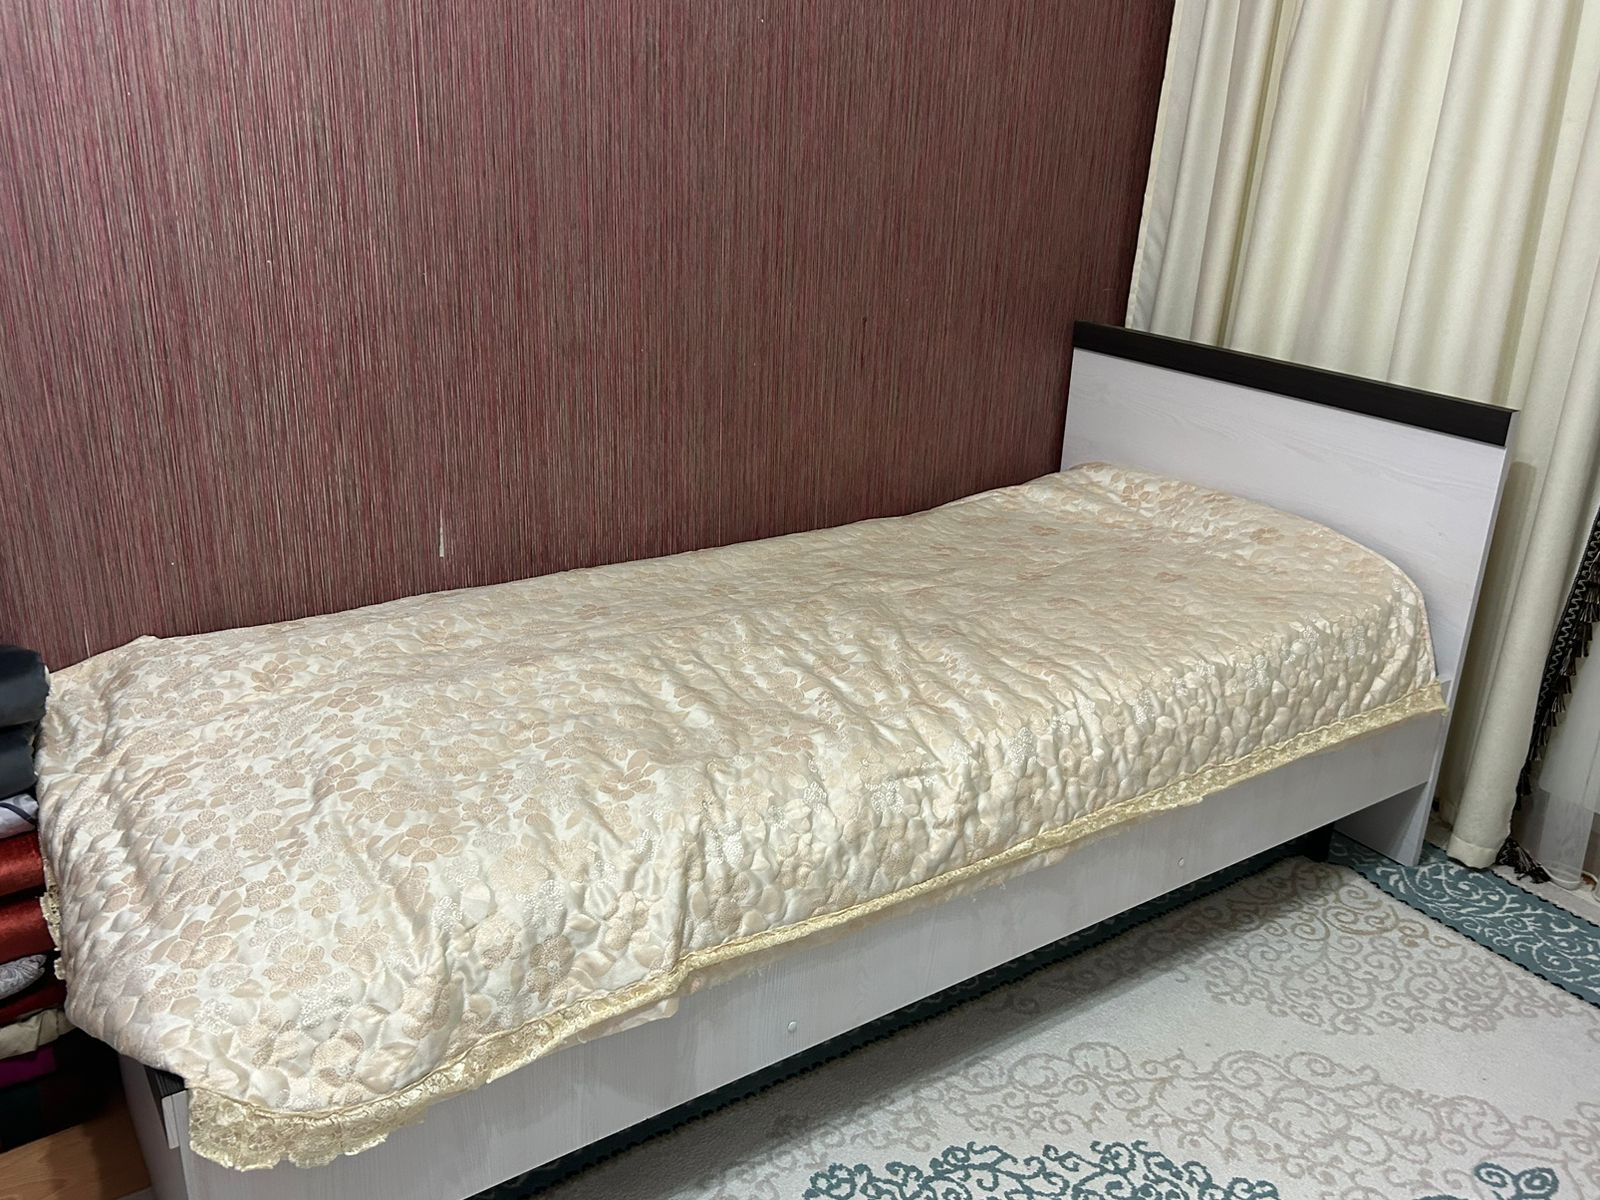 Продам кровать длина 2 метра ширина 95